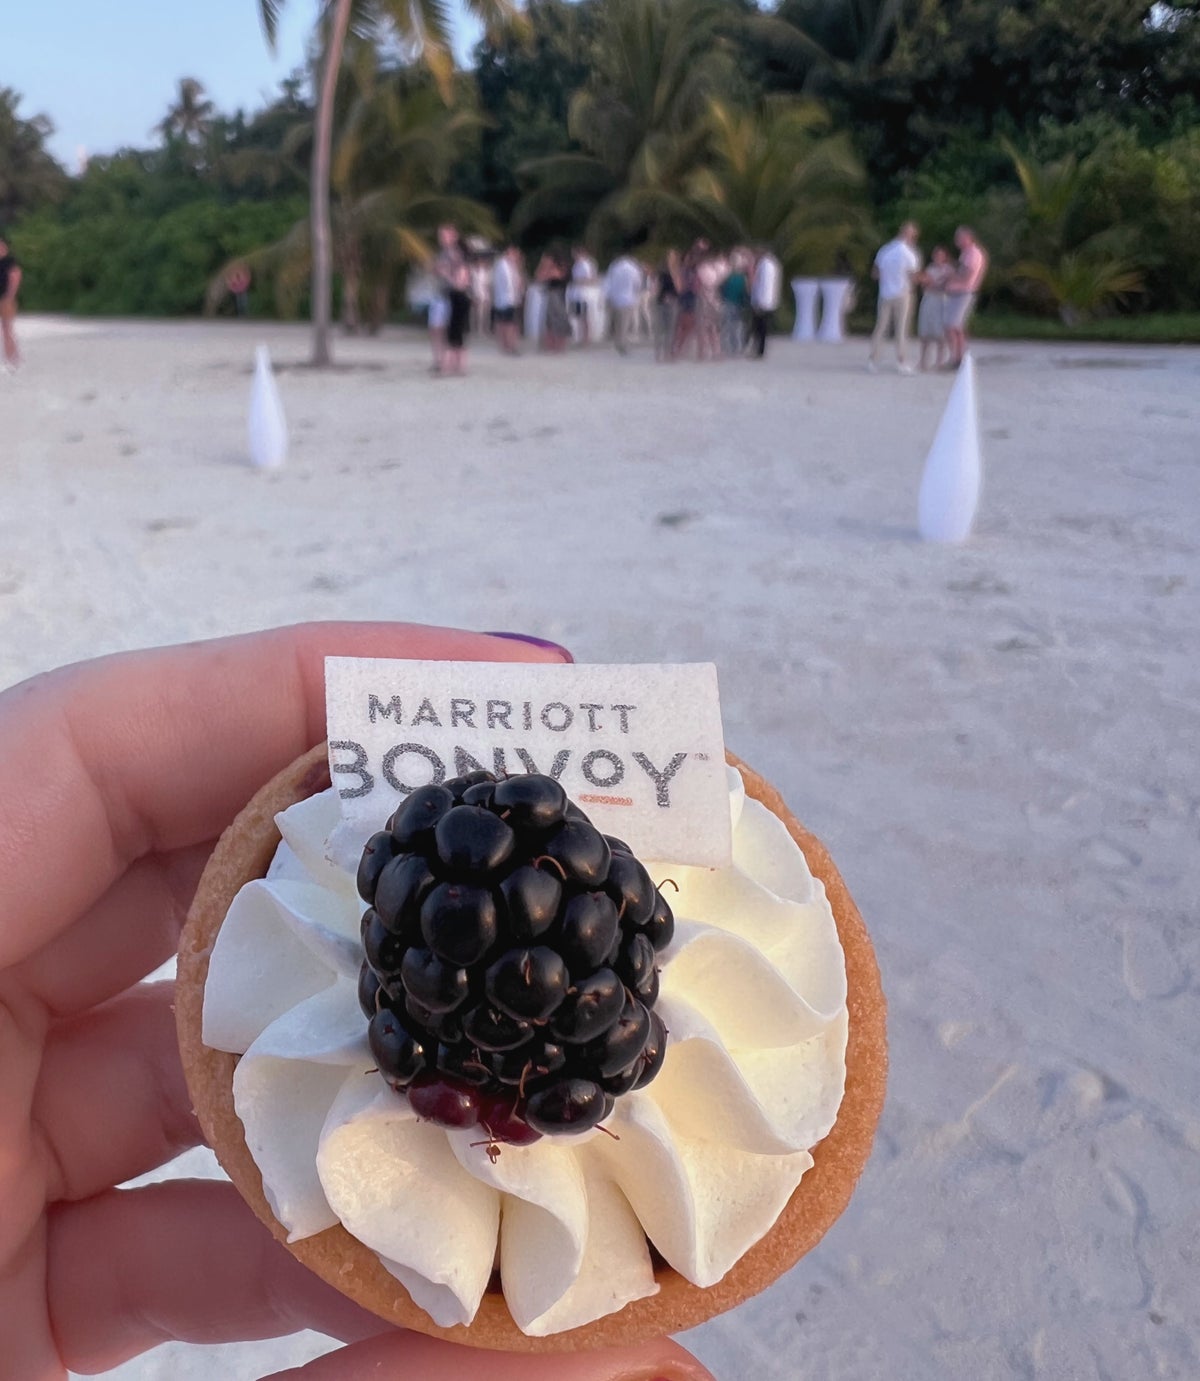 Marriott Bonvoy elite cocktail party at Le Meridien Maldives